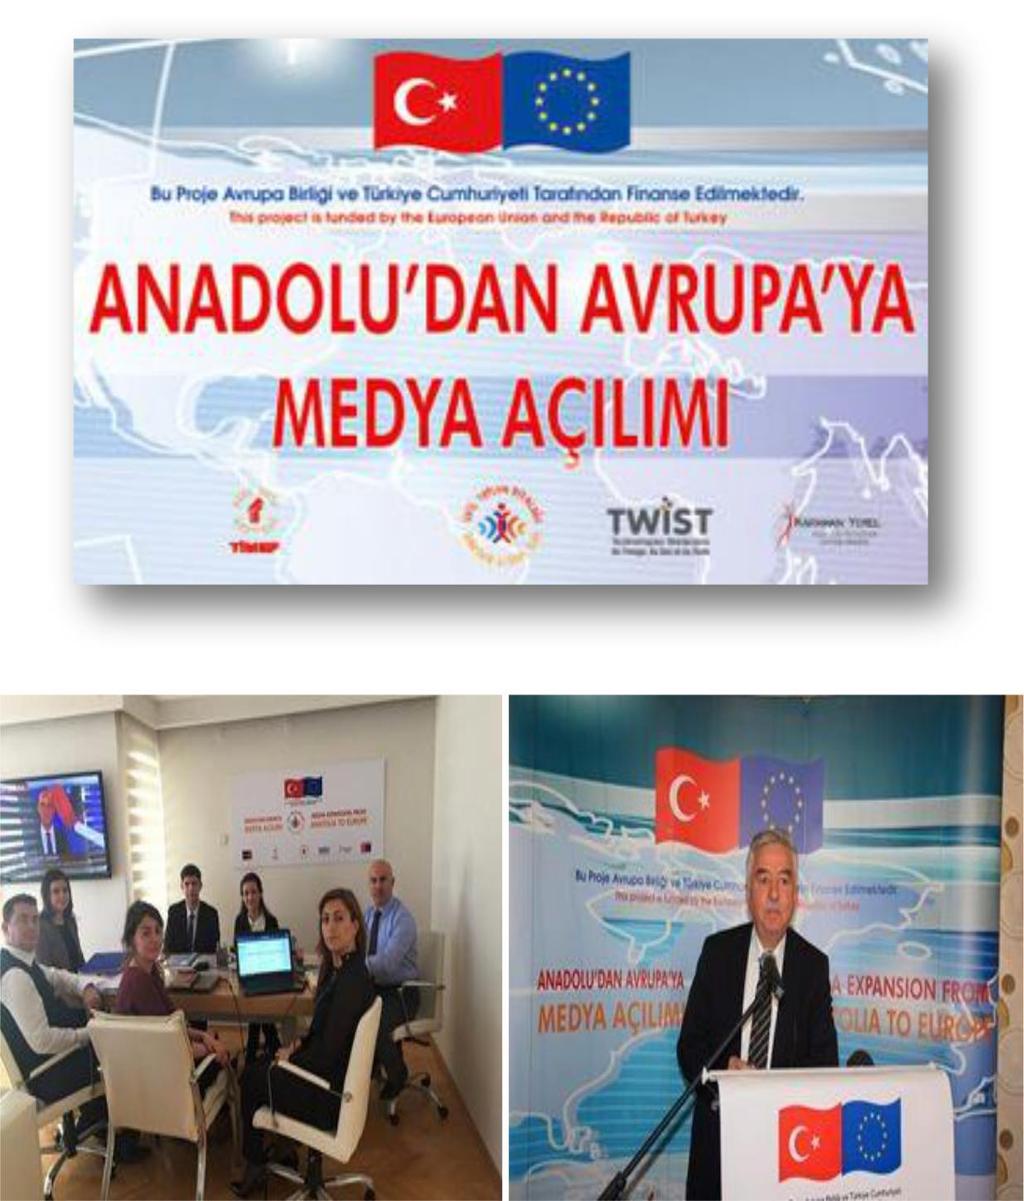 AVRUPA BİRLİĞİ SİVİL TOPLUM DİYALOĞU PROGRAMI: "Anadolu'dan Avrupa'ya